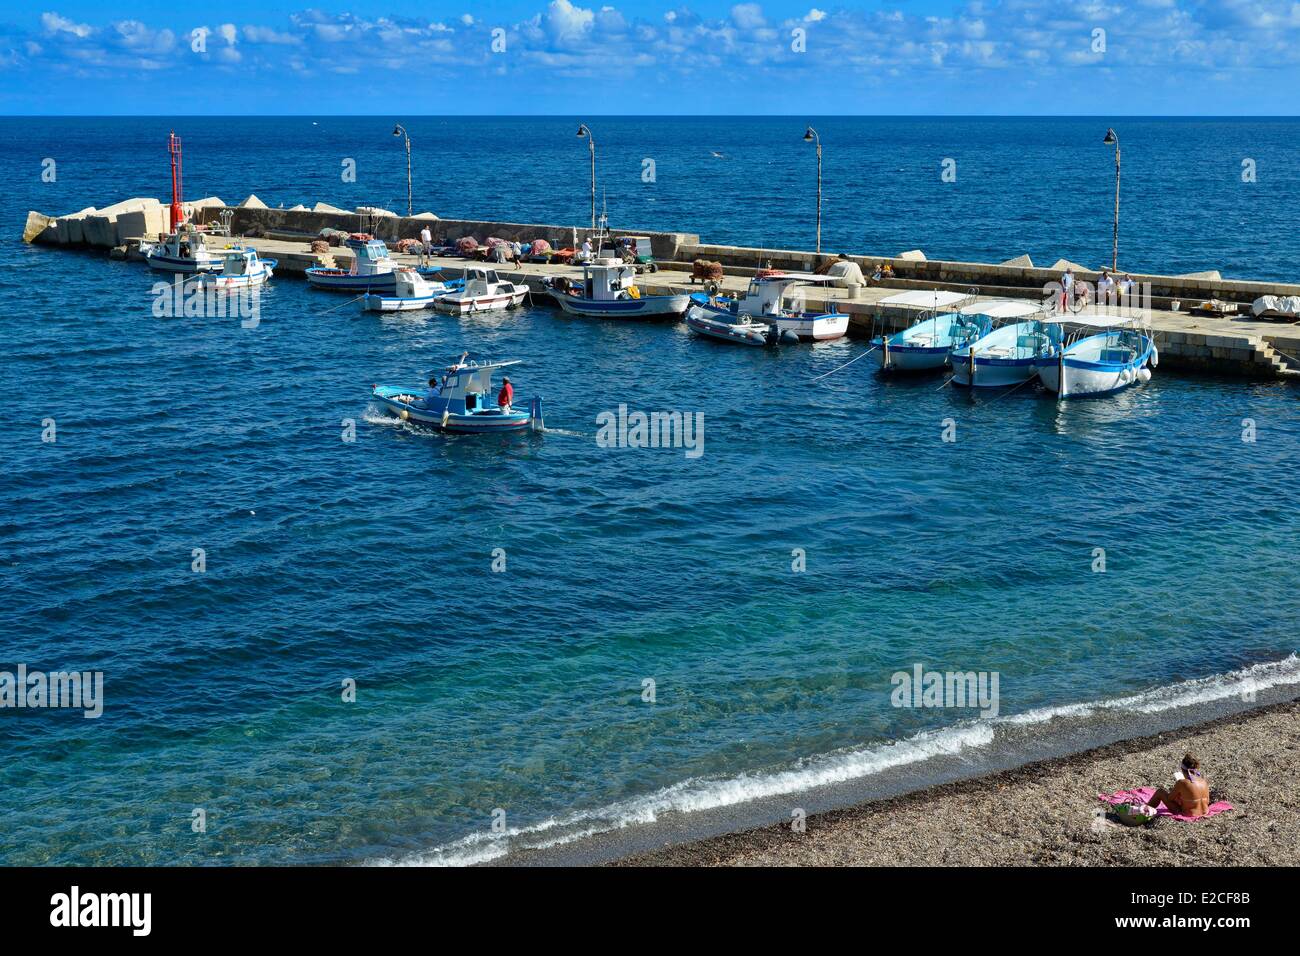 L'Italia, sicilia, isole Egadi, isola di Marettimo, porto di pesca, i pescherecci con reti da traino dock in legno con un carattere lettura su una spiaggia in primo piano Foto Stock